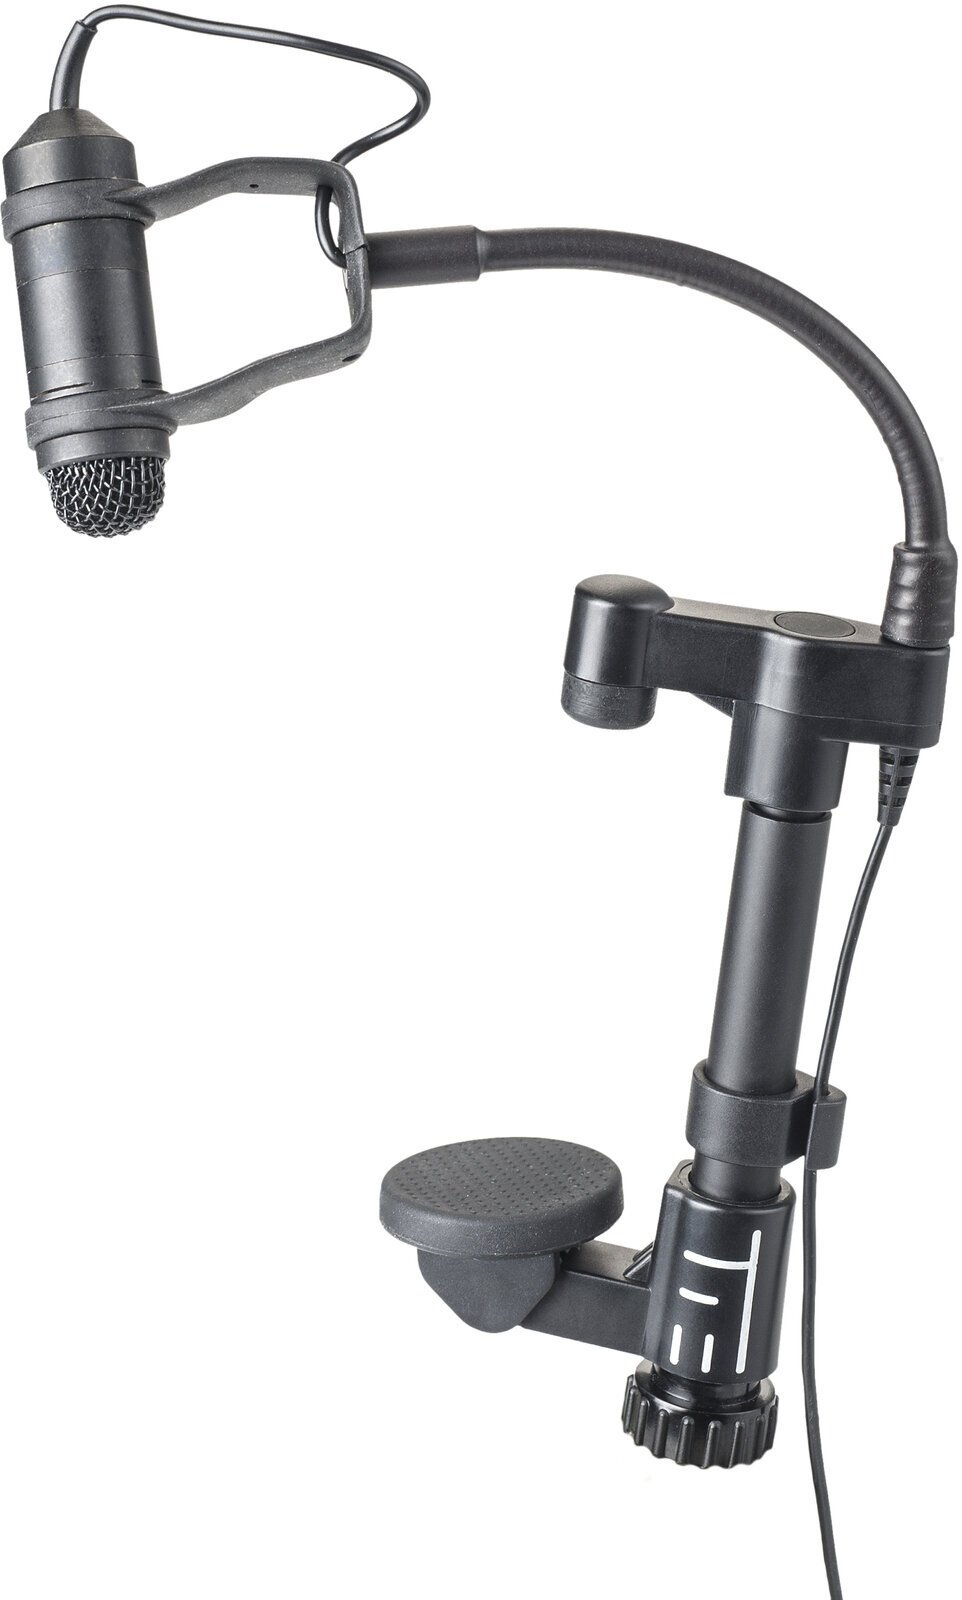 Kondensator Instrumentenmikrofon TIE TCX110 Condenser Instrument Microphone for Guitar (B-Stock) #951772 (Nur ausgepackt)